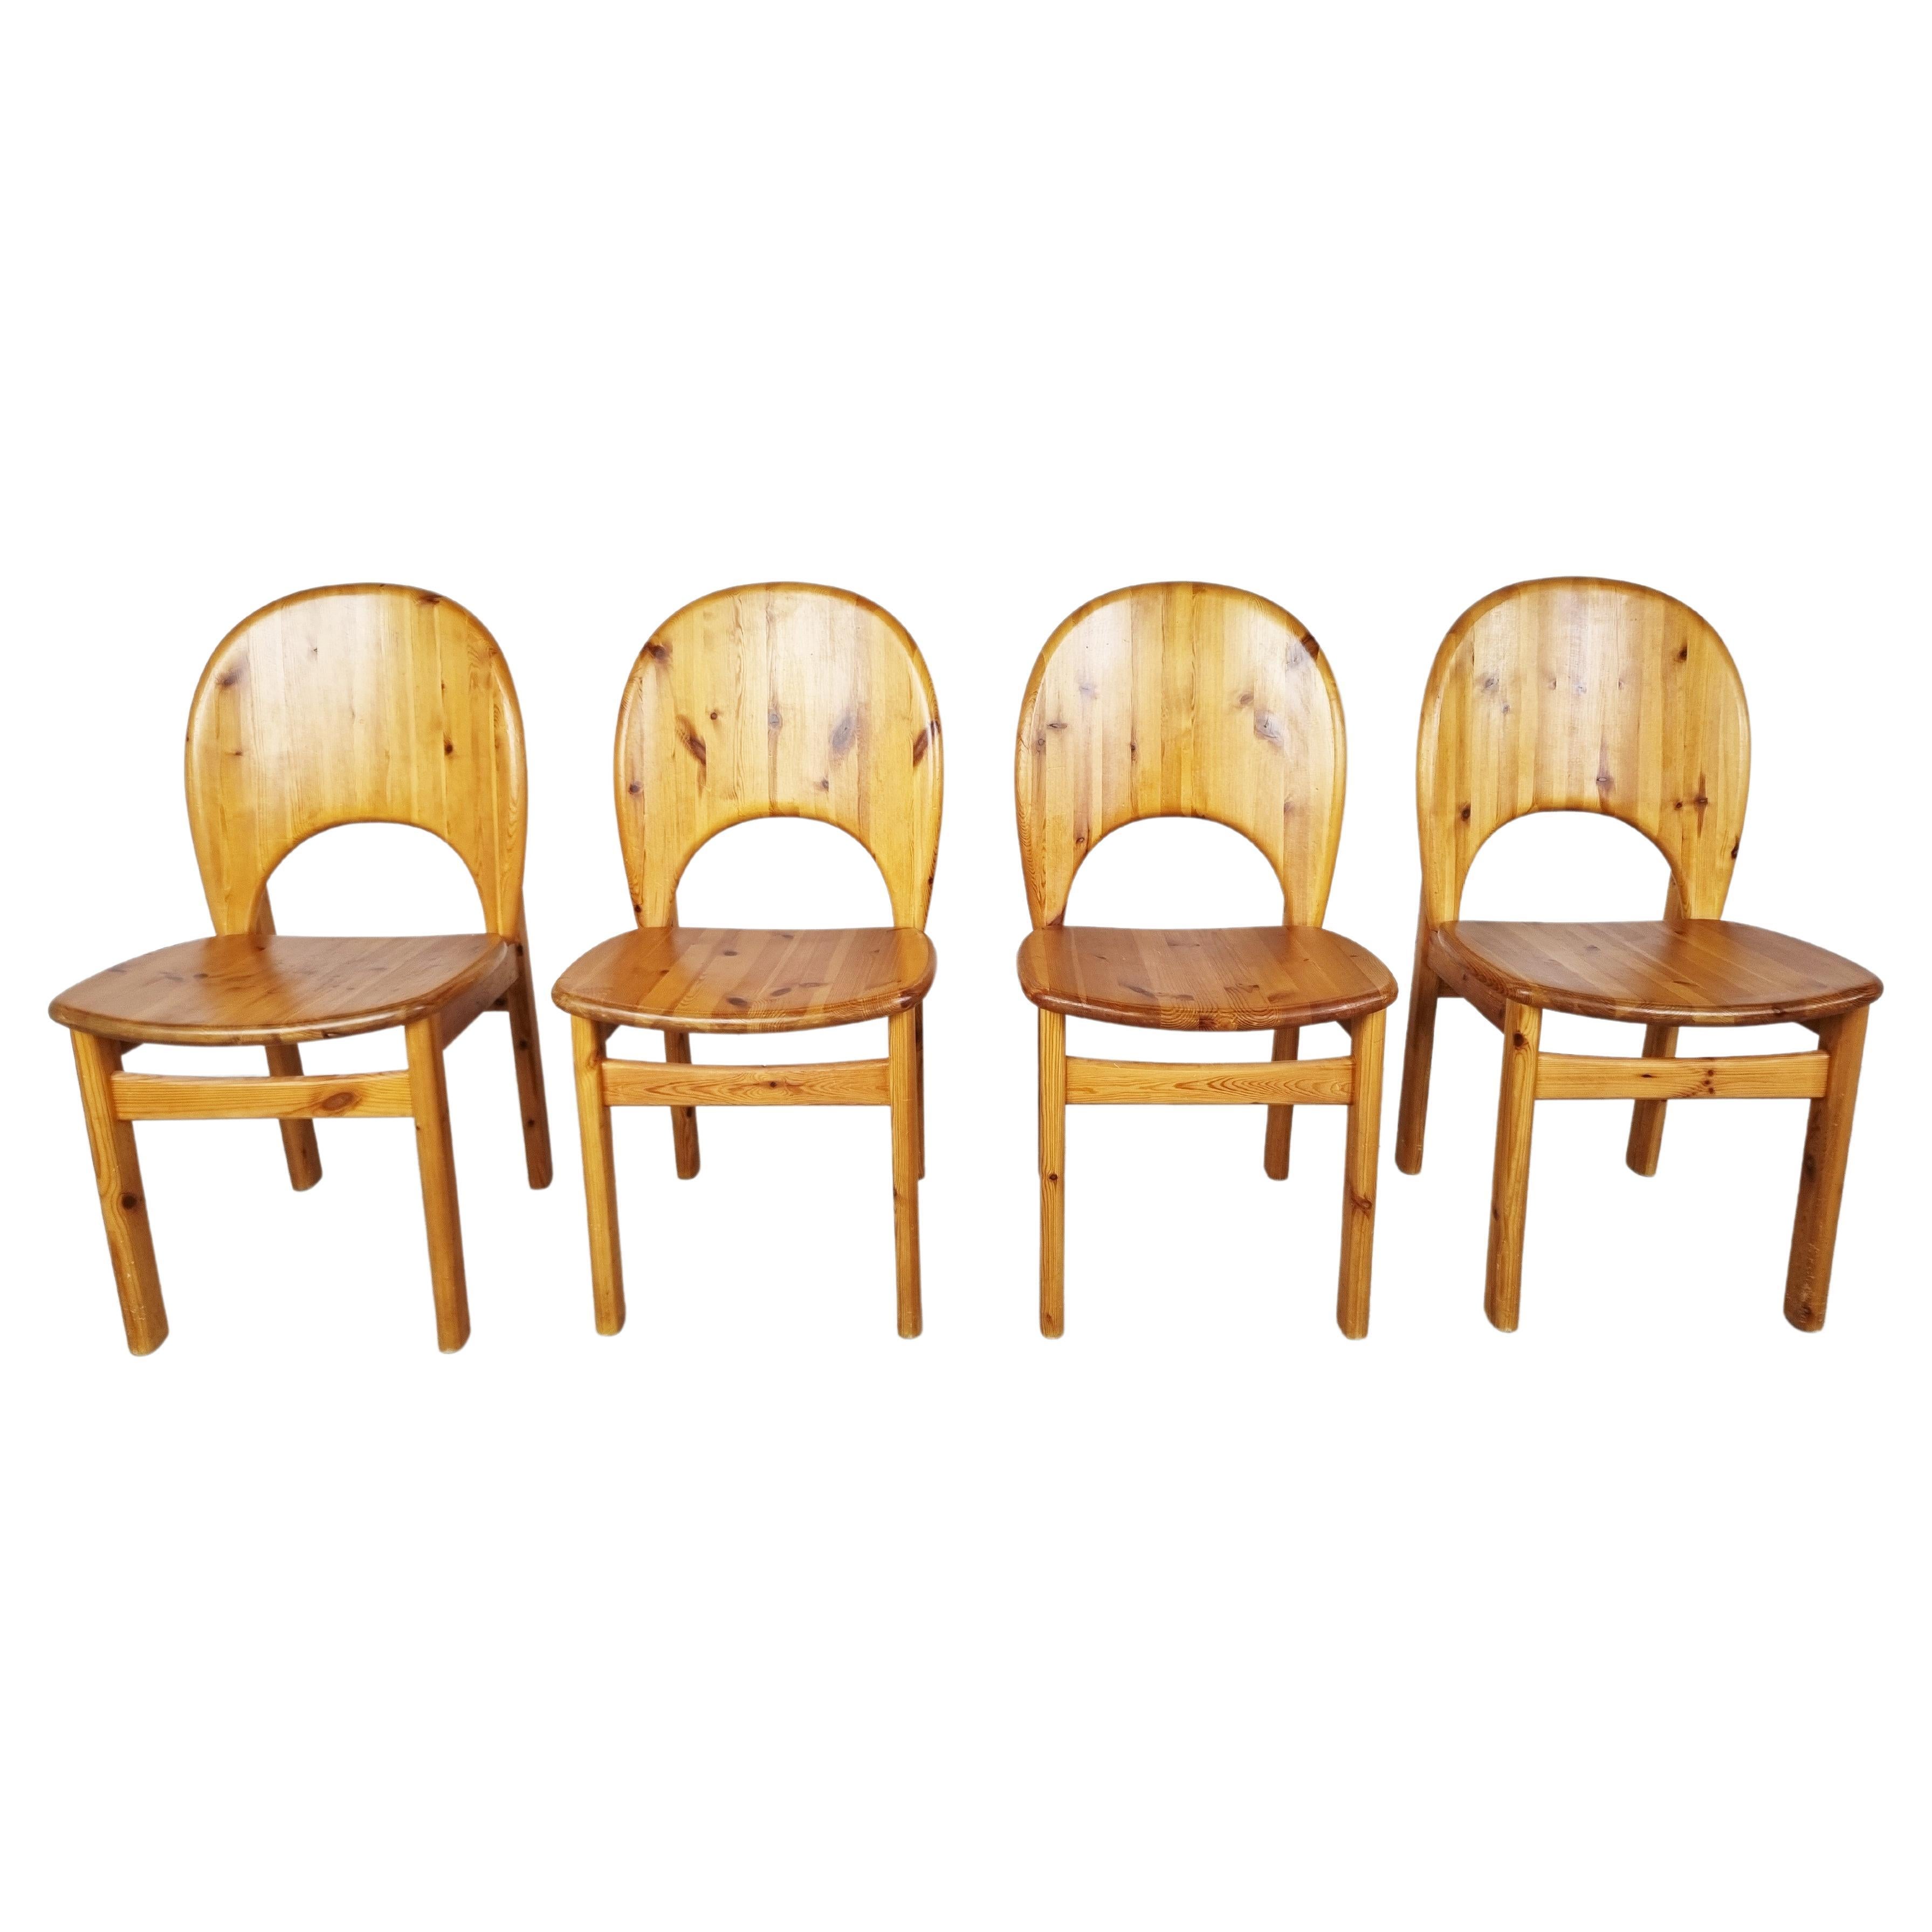 Rainer Daumiller Pine Wood Dining Chairs for Hirtshals Savvaerk - Set of 4 - 198